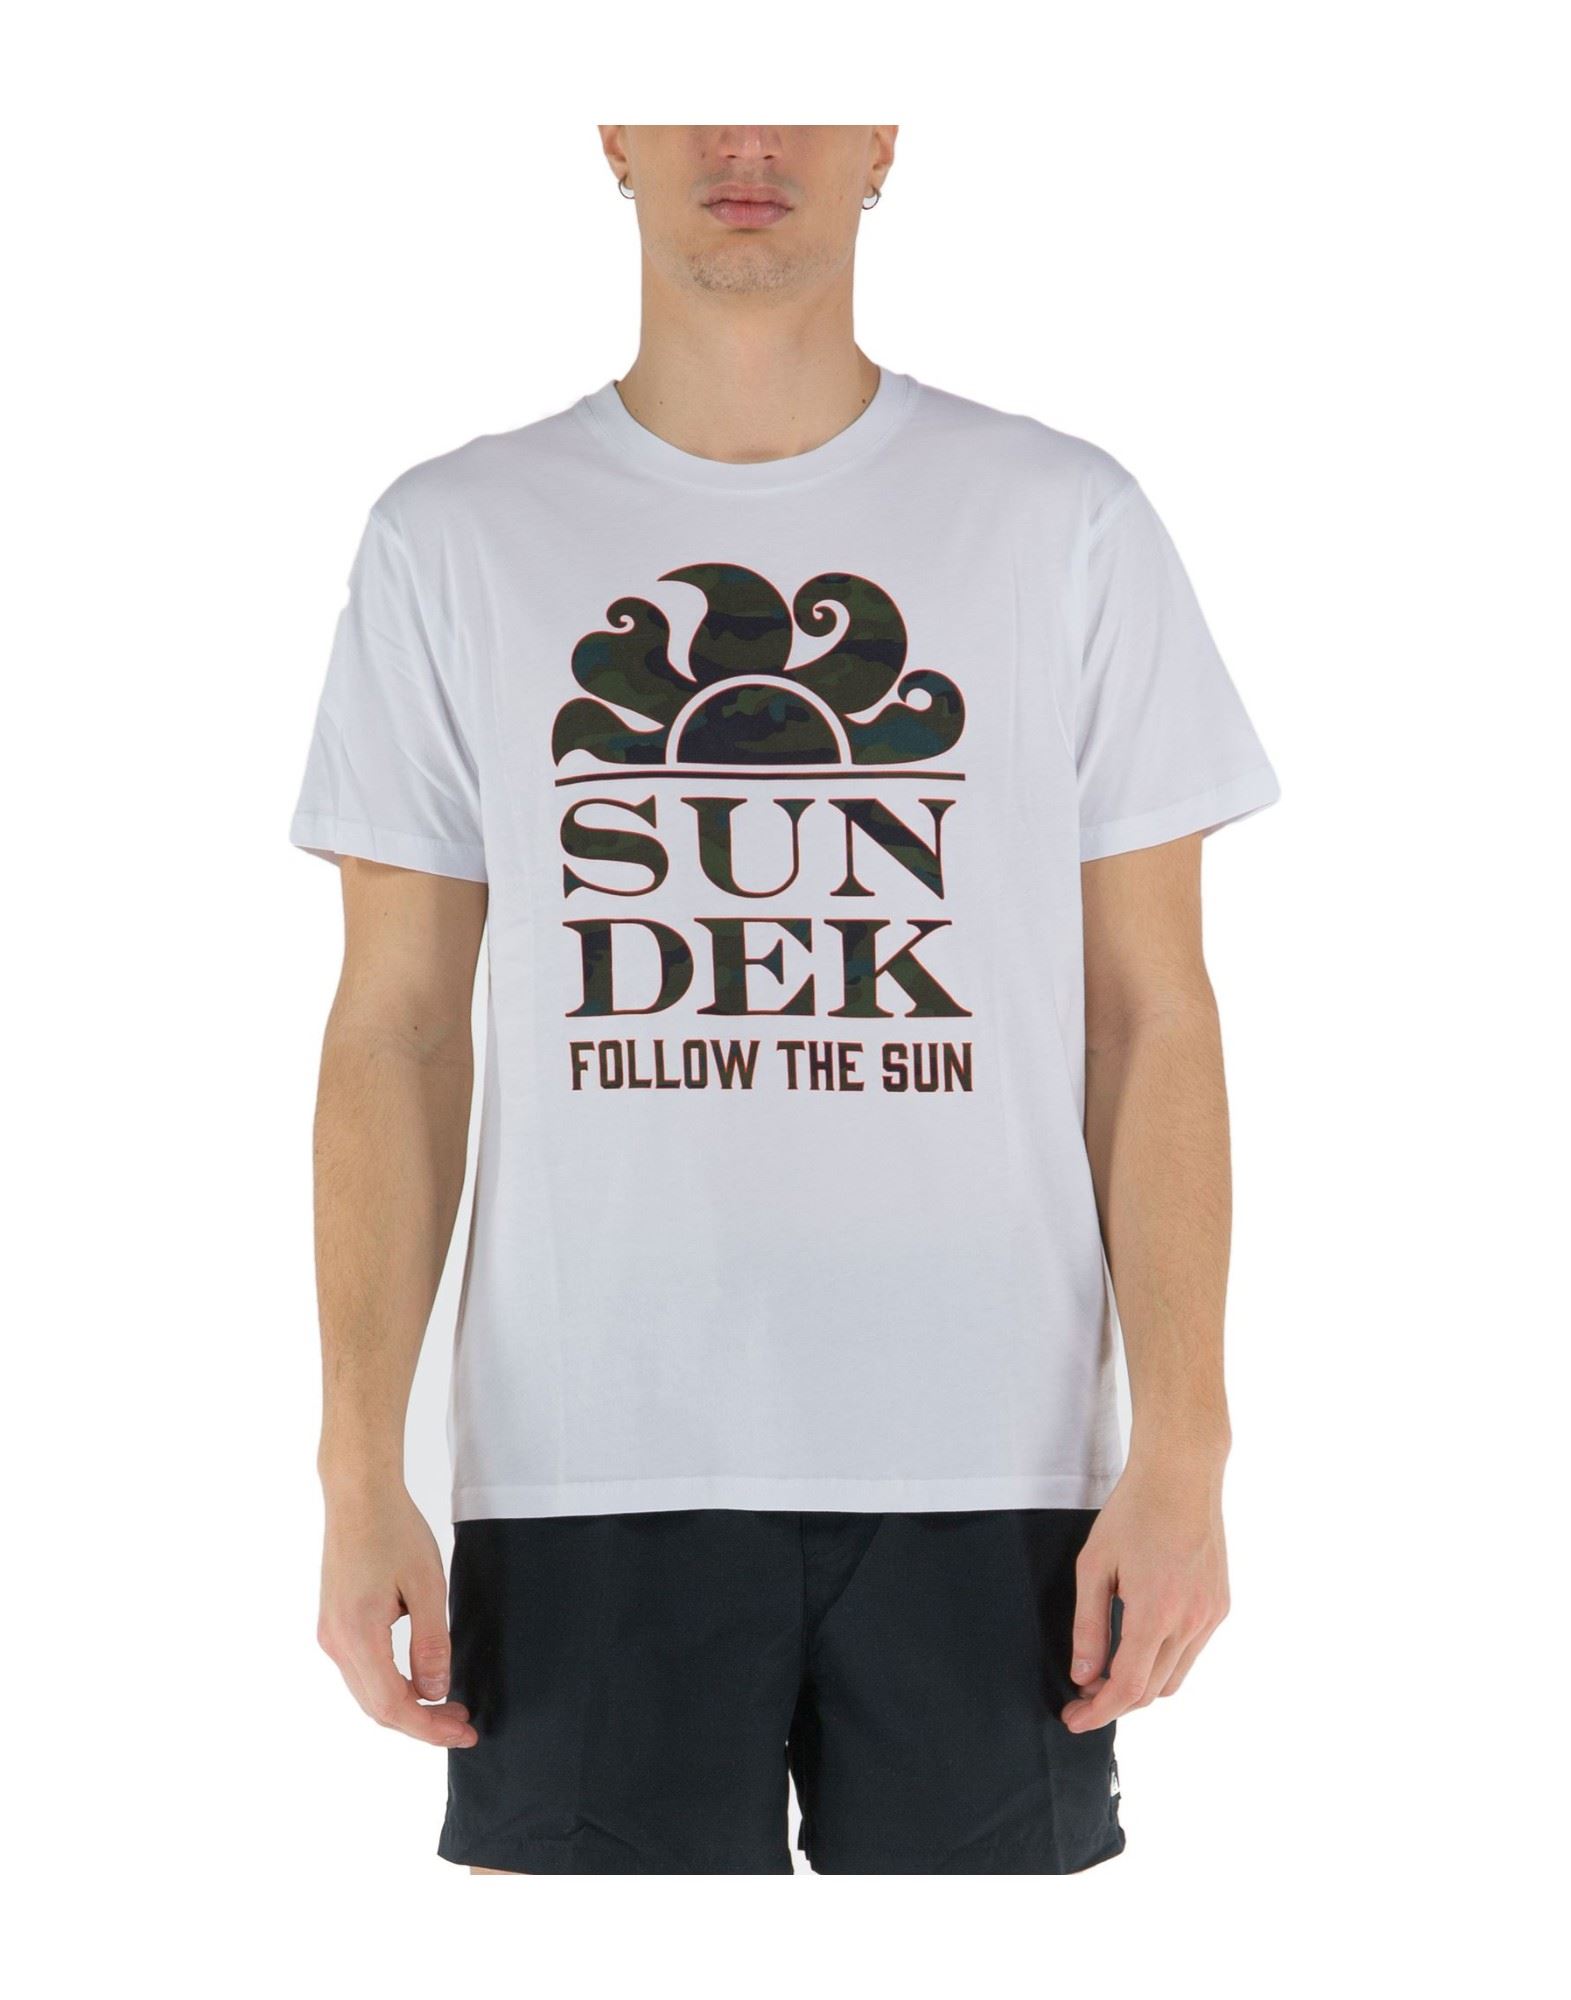 SUNDEK T-shirts Herren Weiß von SUNDEK